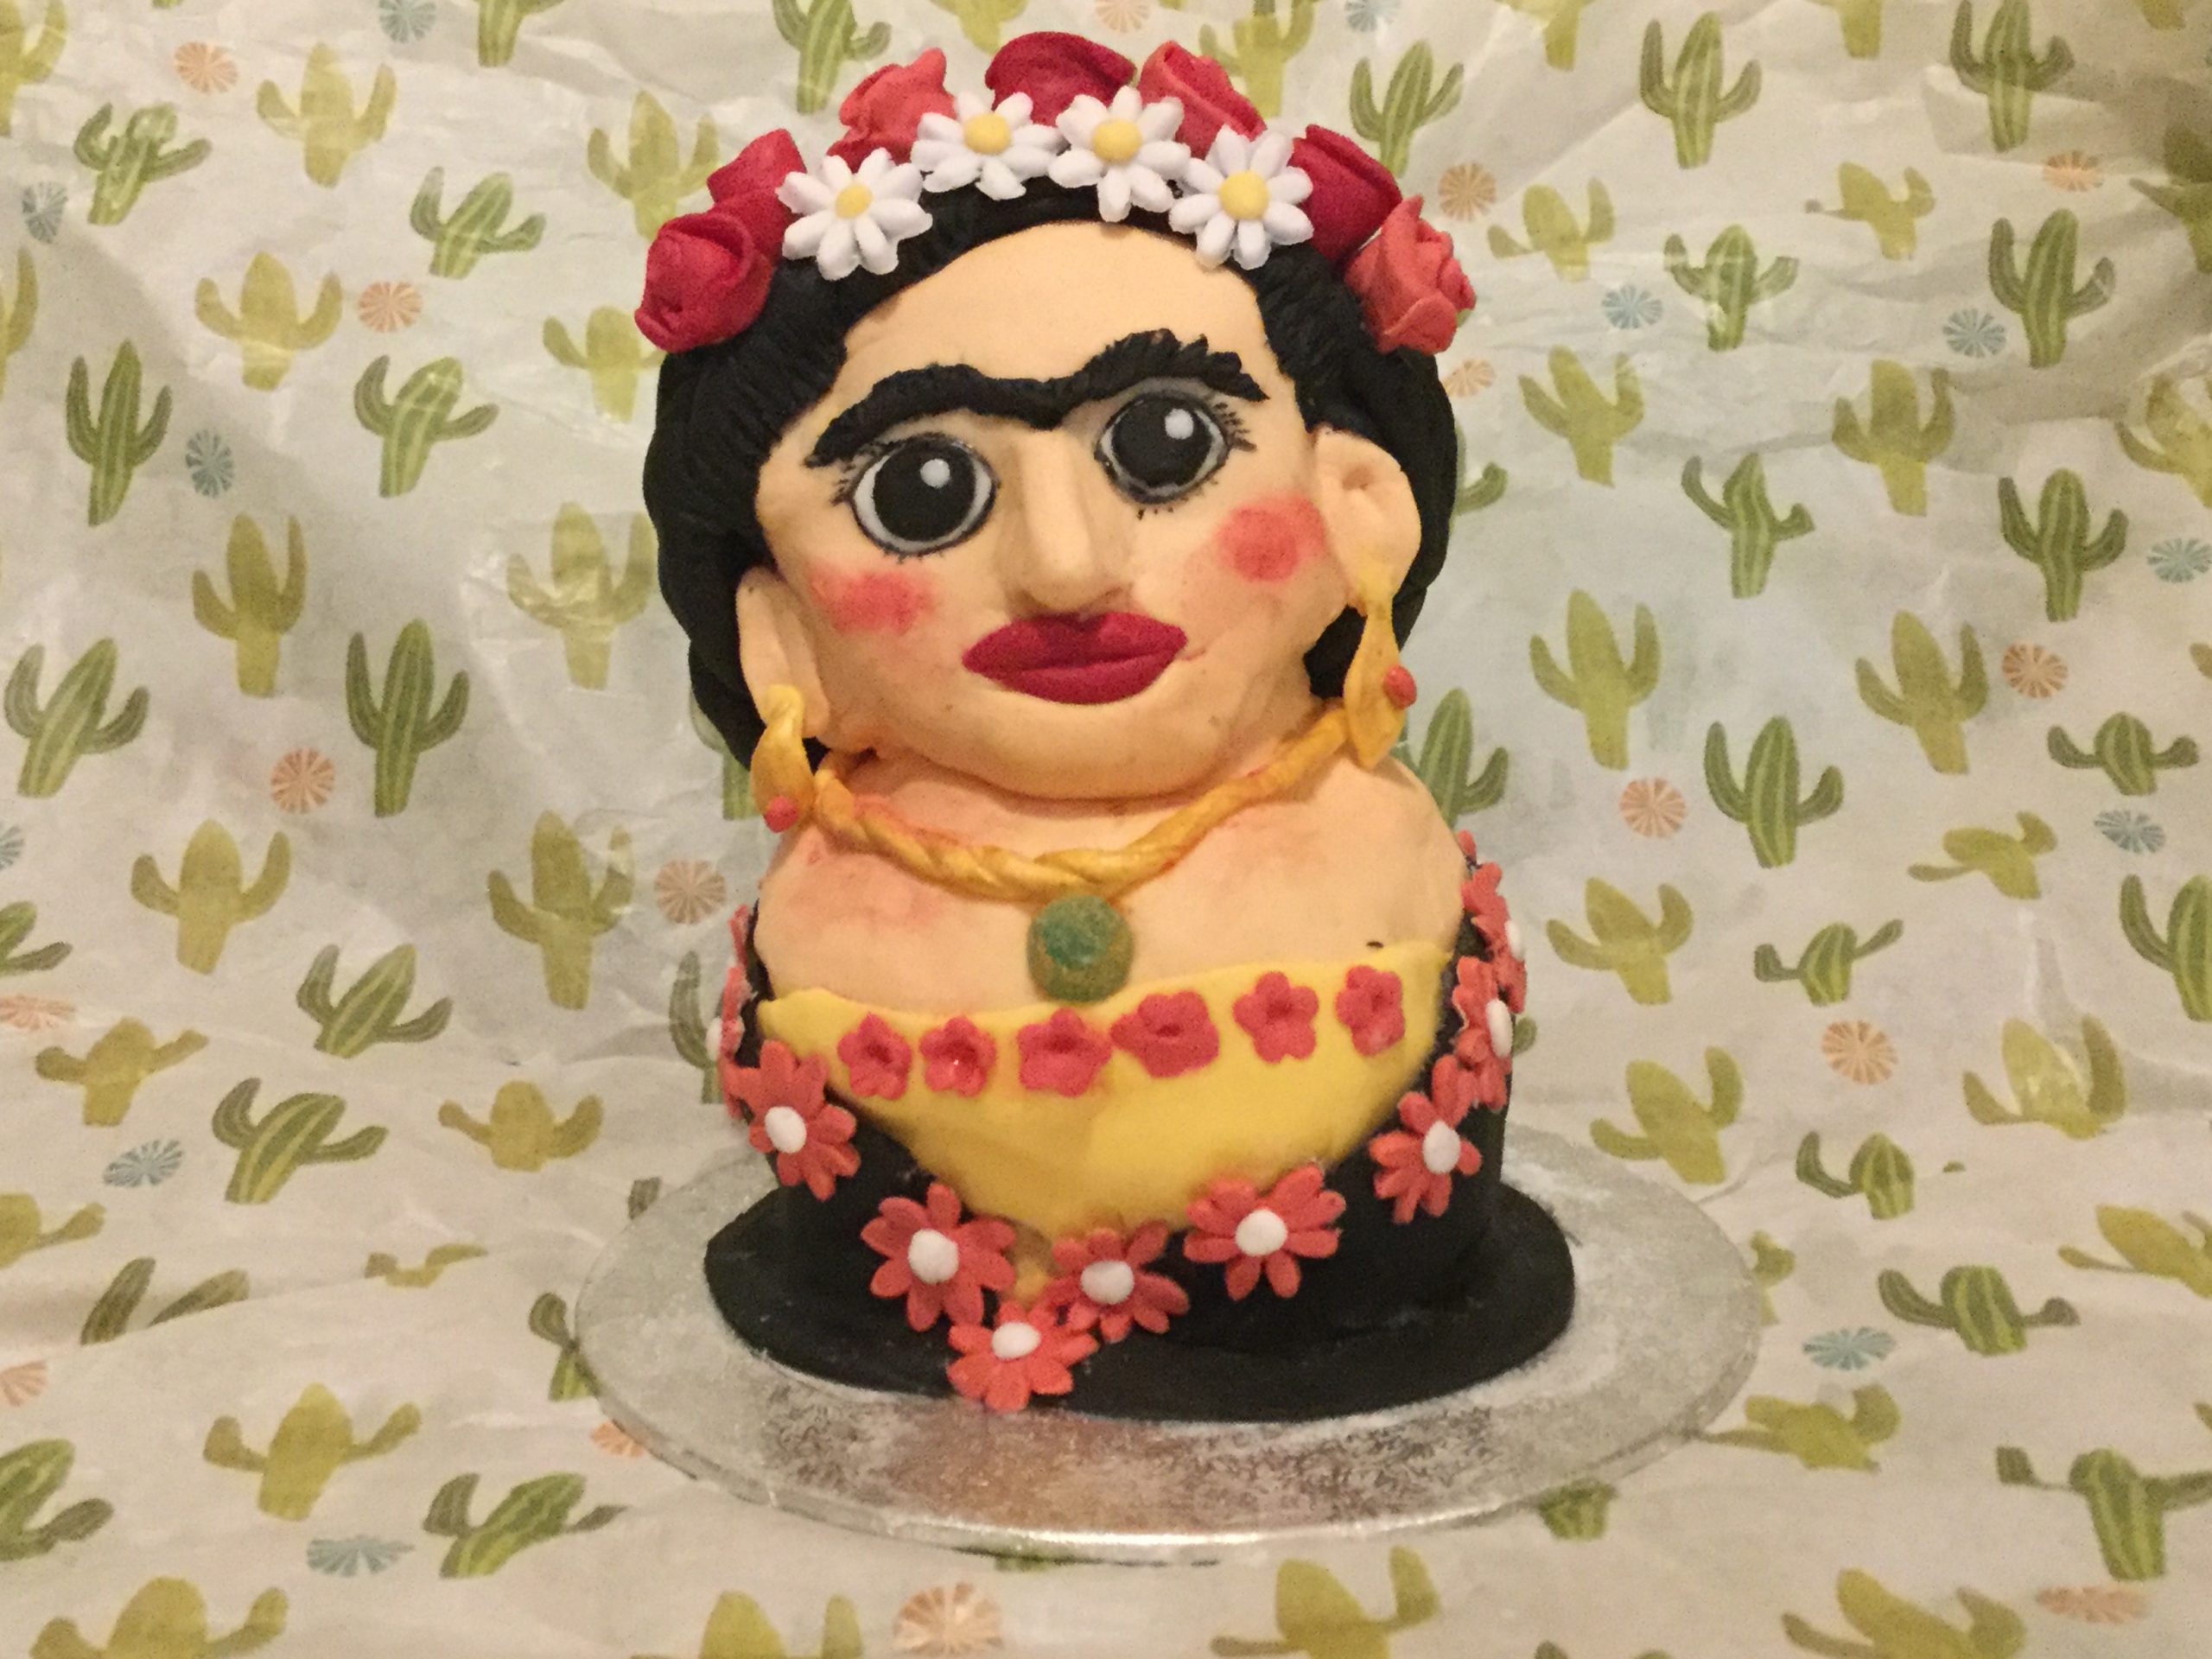 Frida Kahlo cake - The Great British Bake Off | The Great British Bake Off